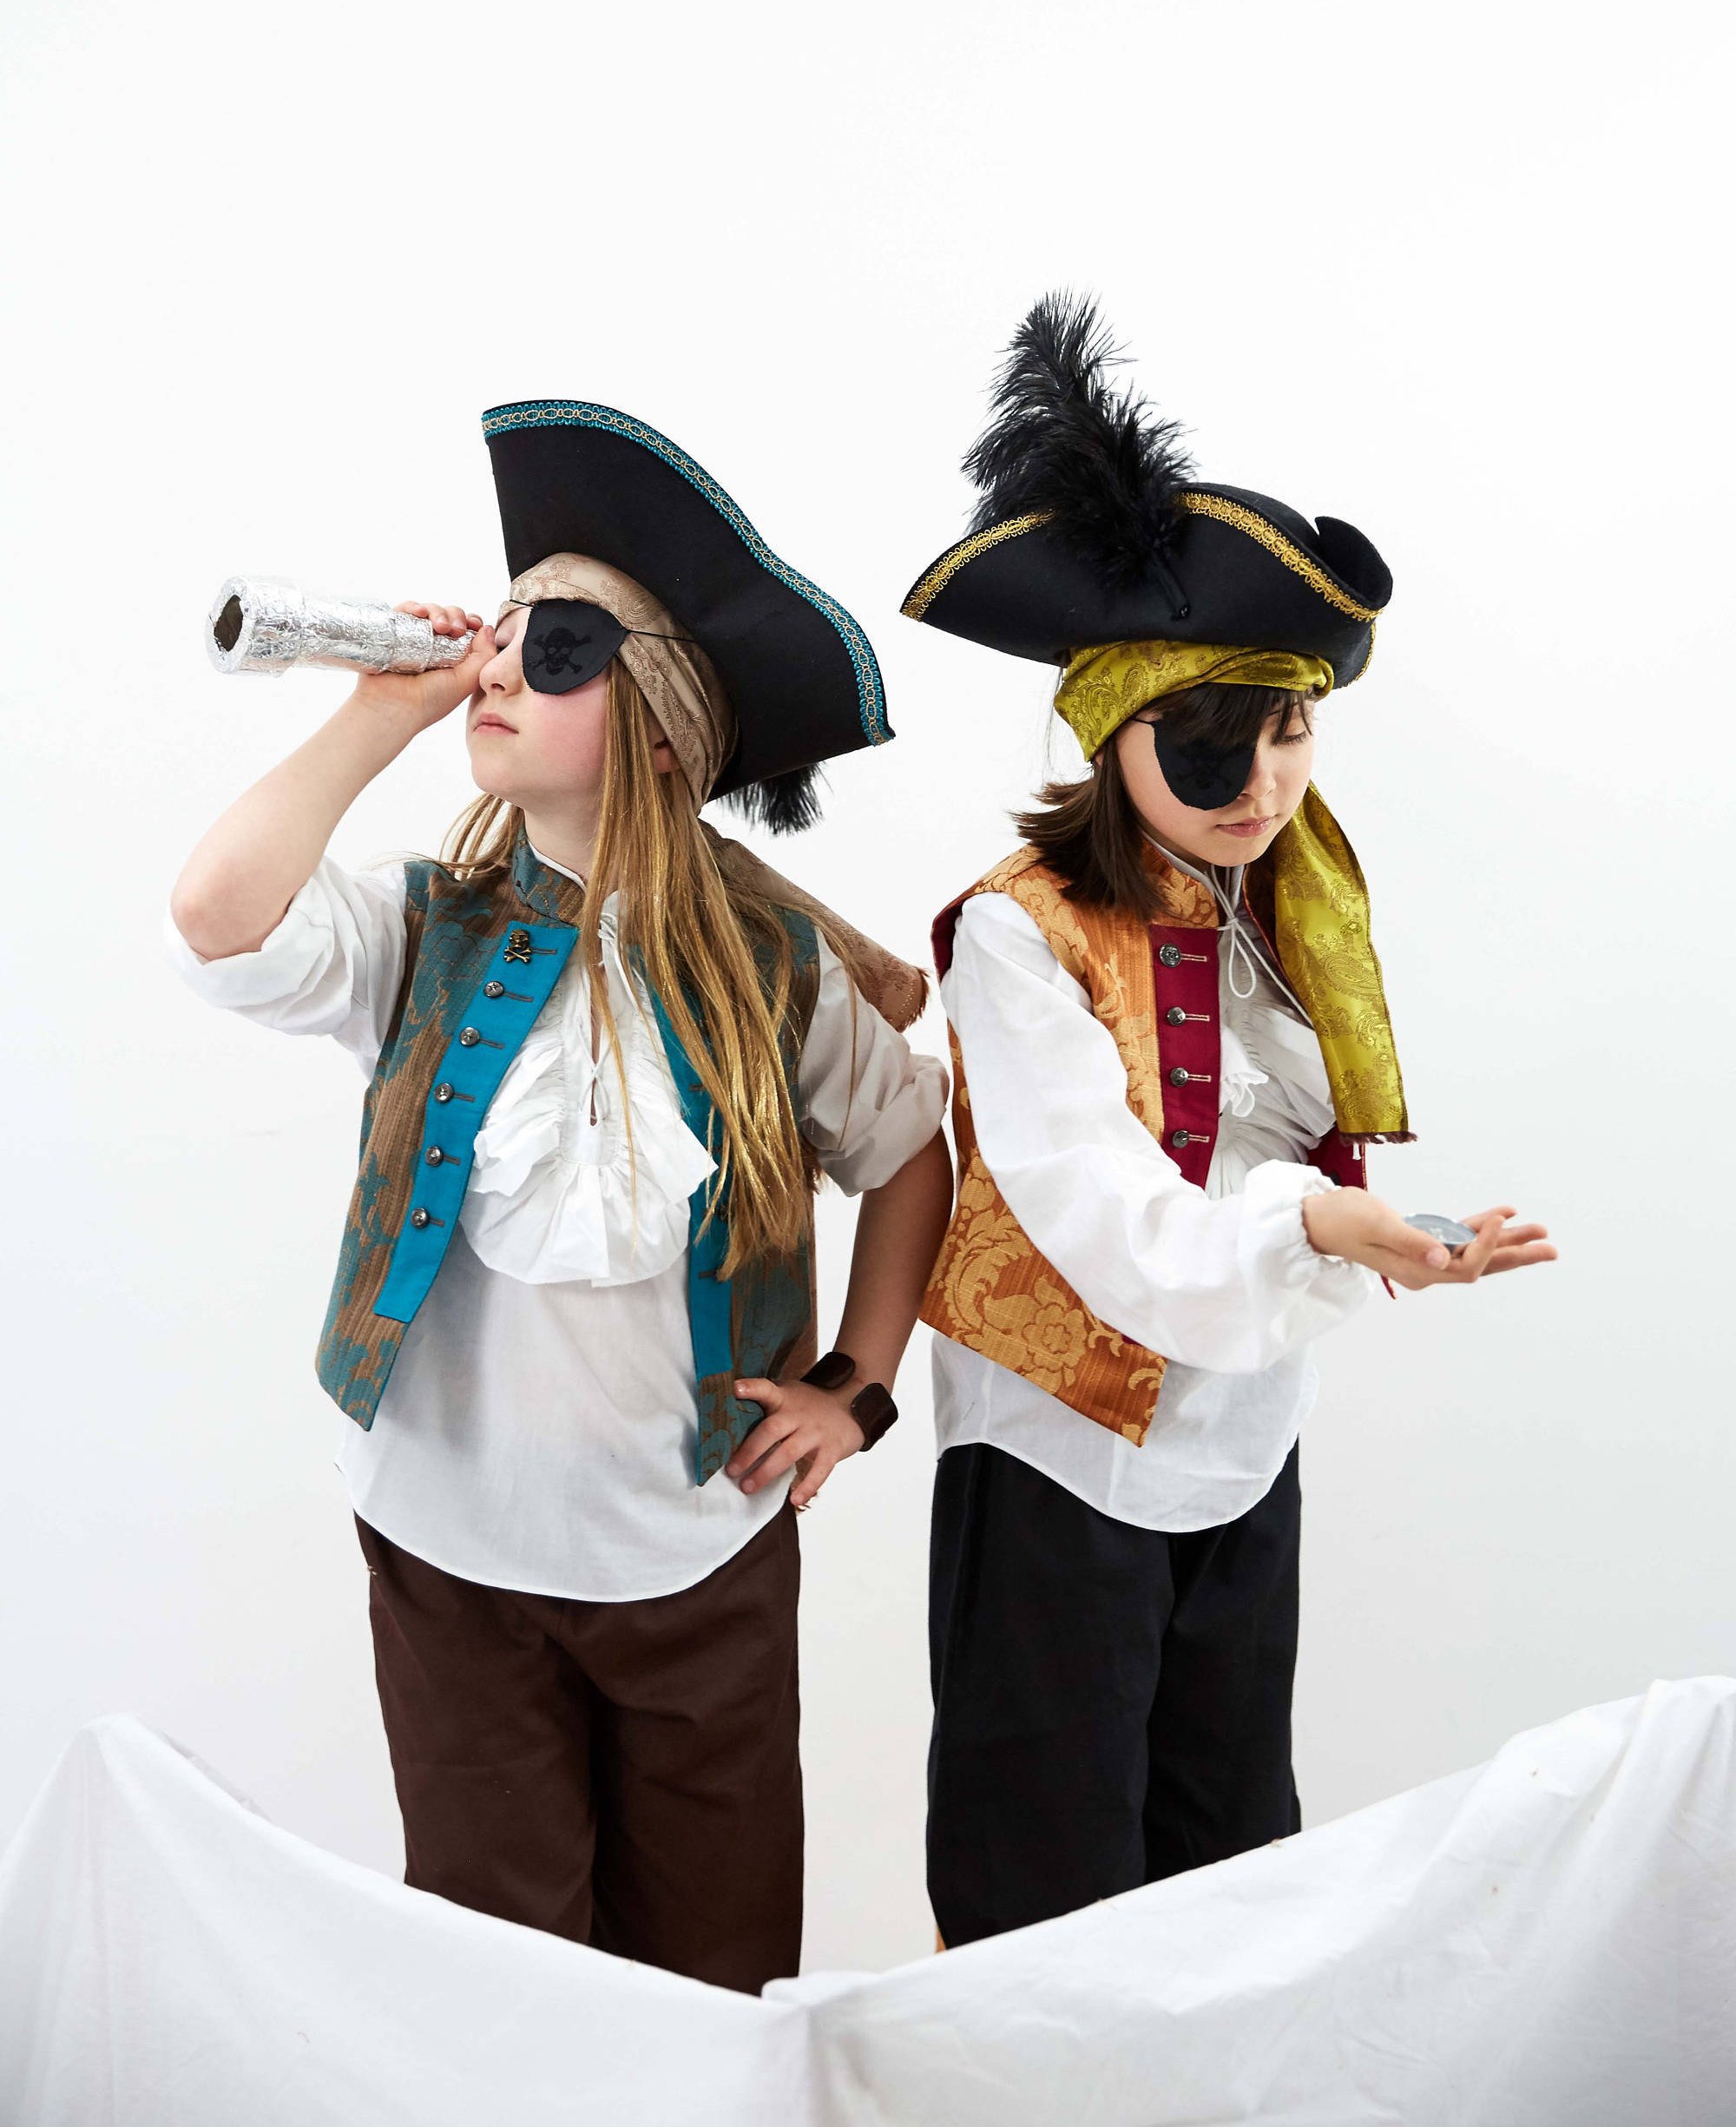 Costume complet de pirate pour enfants - gilet, chemise et pantalon